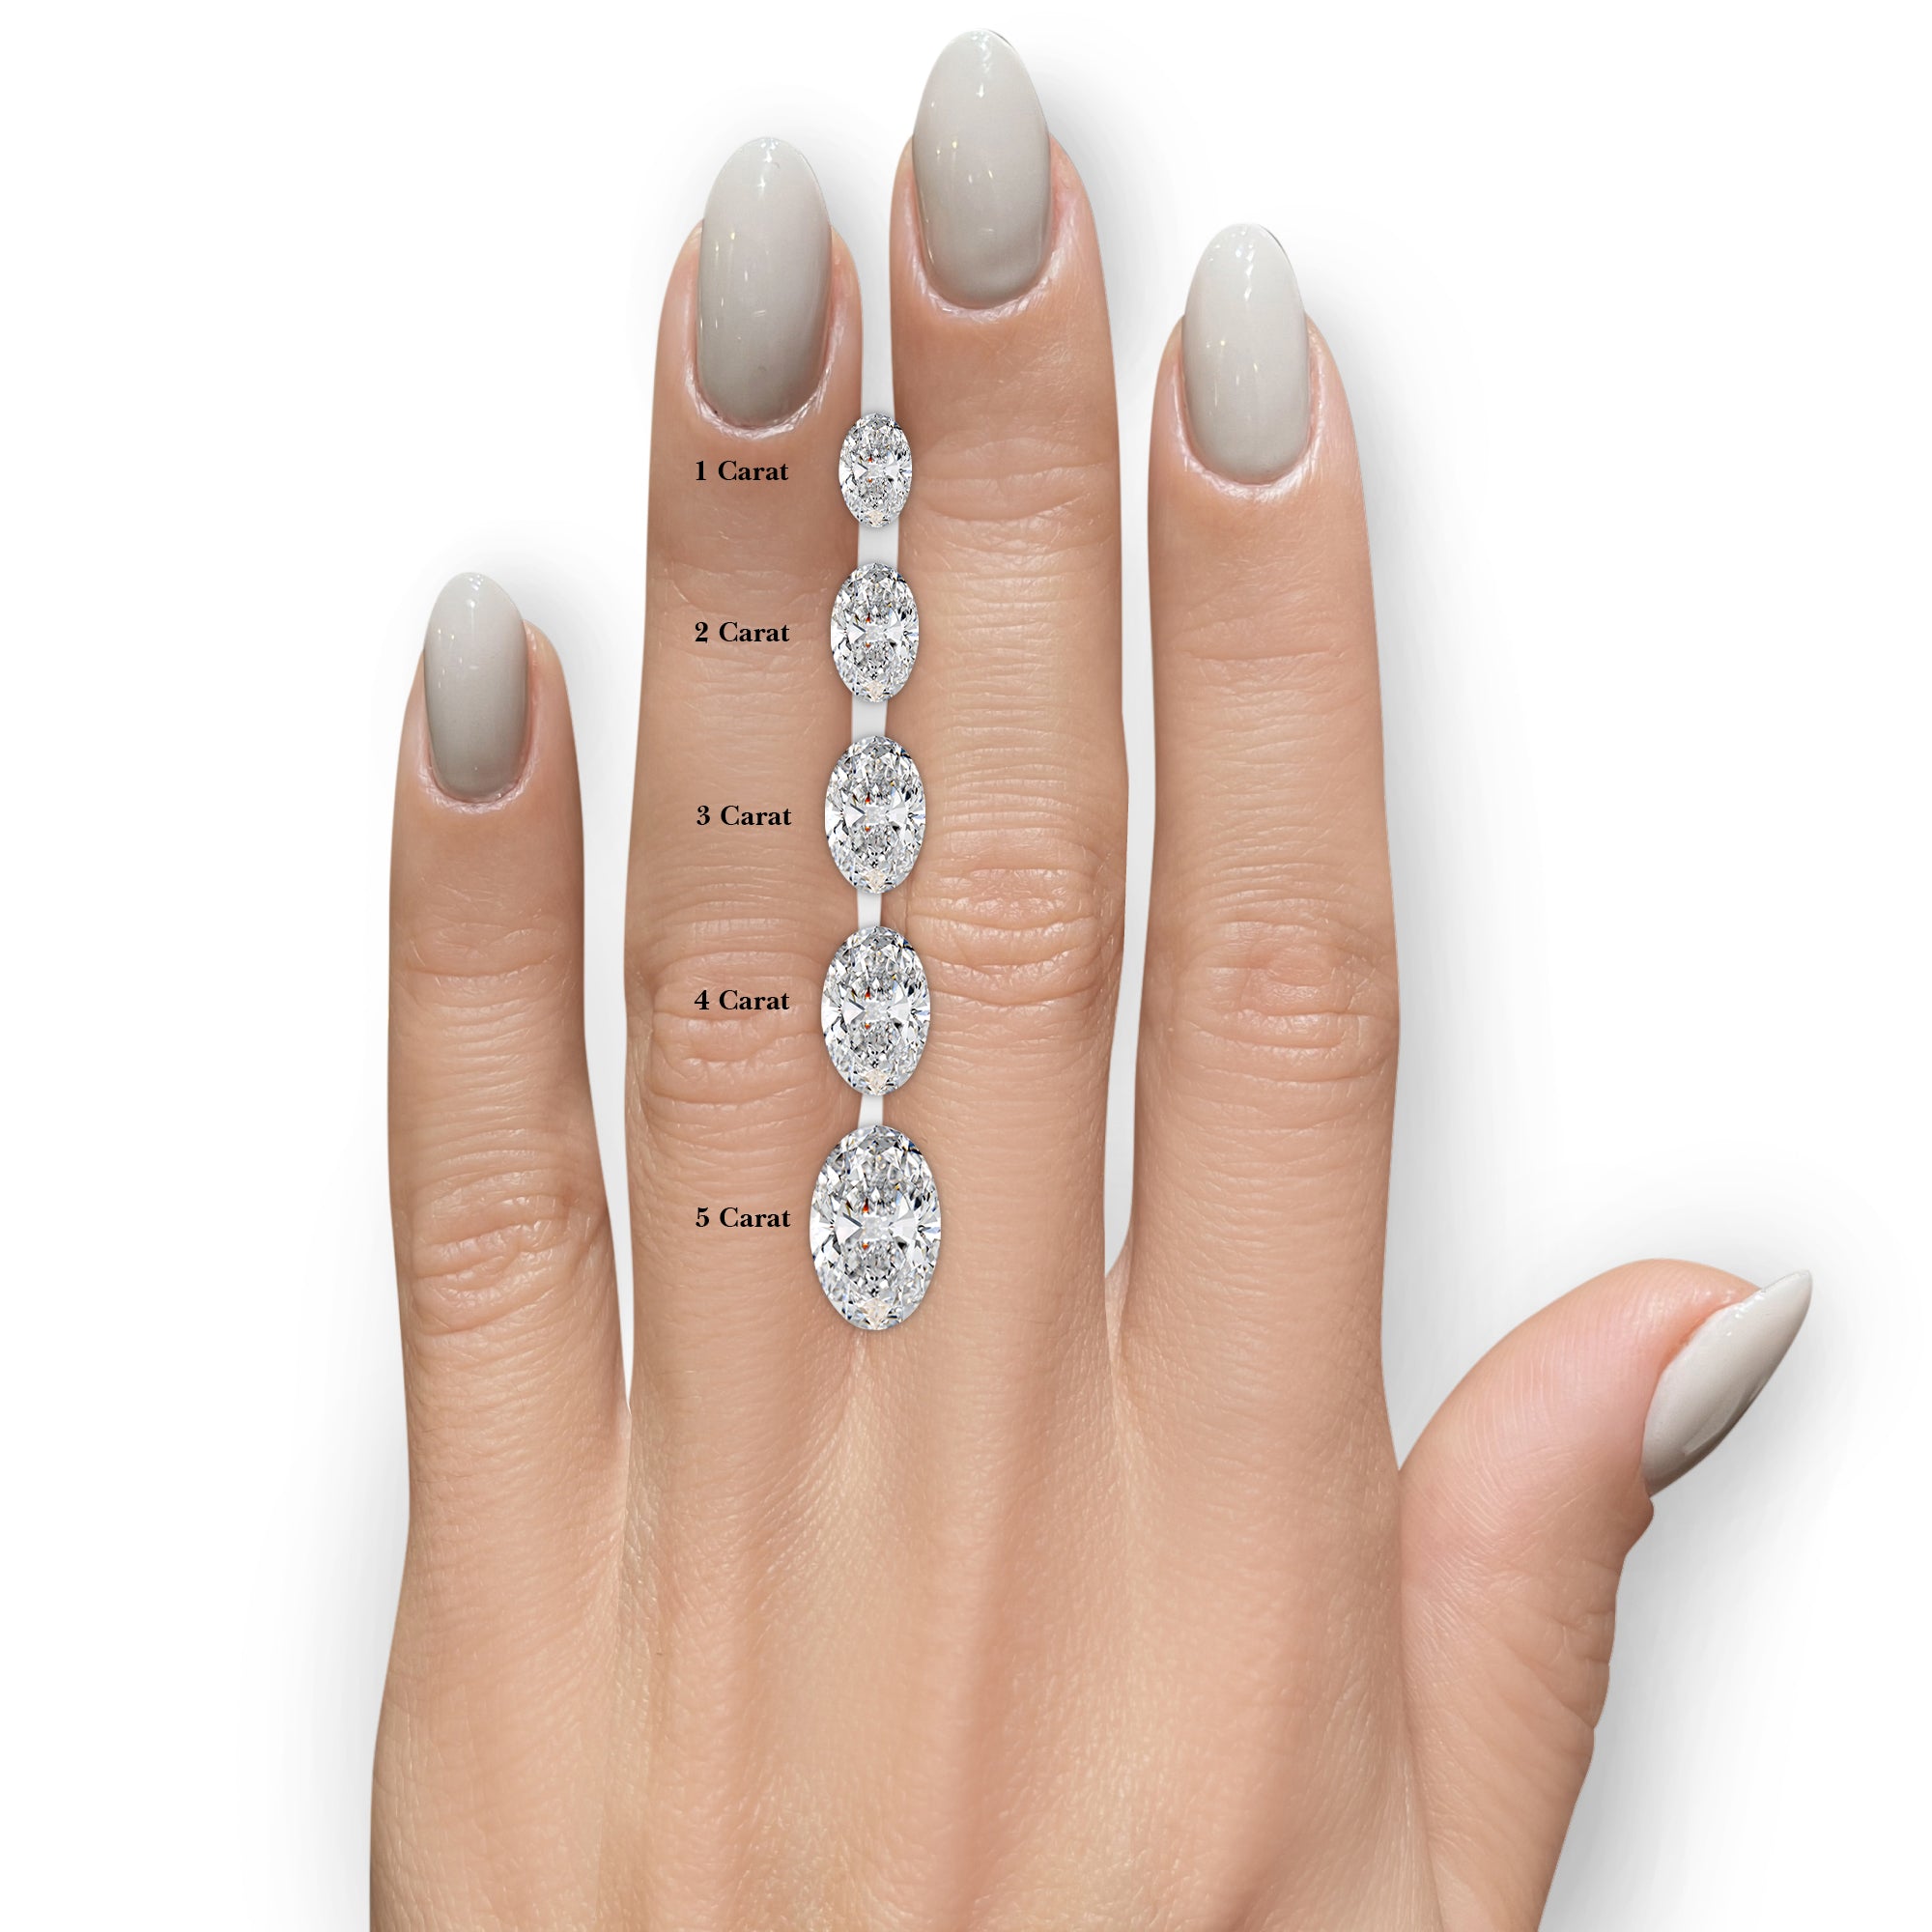 Alicia Diamond Engagement Ring -Platinum